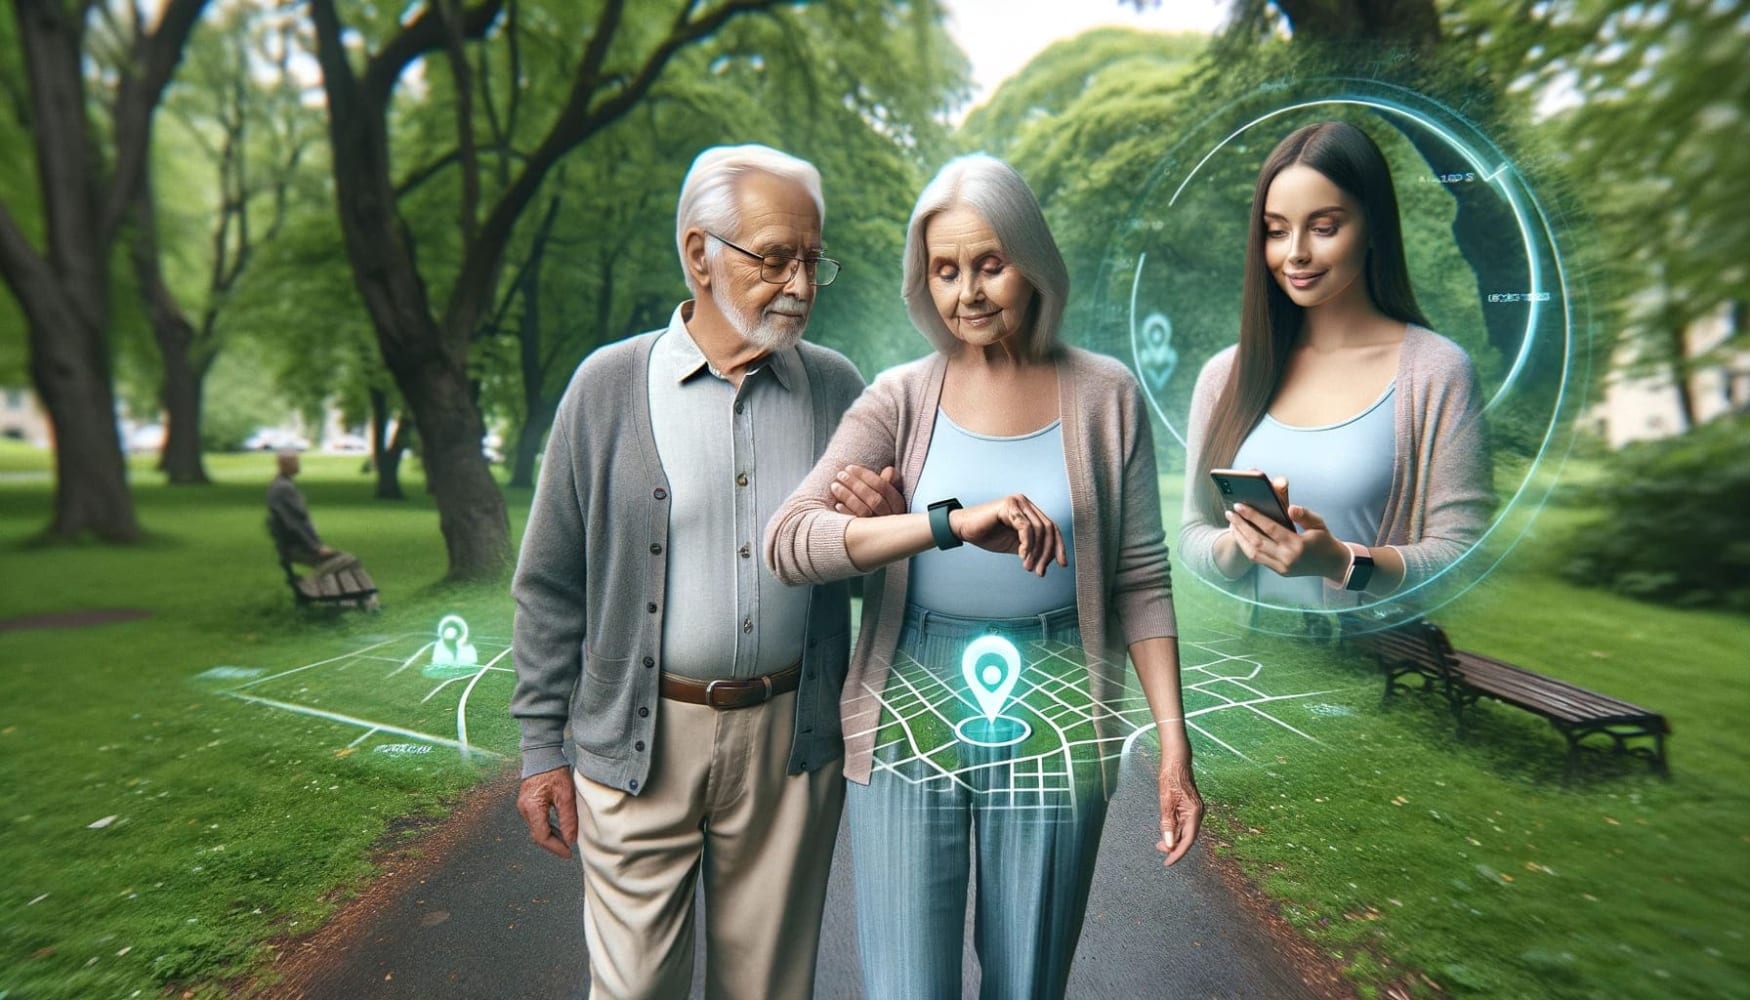 Ein älterer Mann und eine Frau stehen nebeneinander auf einem Parkweg und schauen auf ihre Uhren, ringsherum grüne Bäume und ein paar Geolocation-Gitter, rechts im Kreis ein Mädchen, das auf ihr Handy schaut